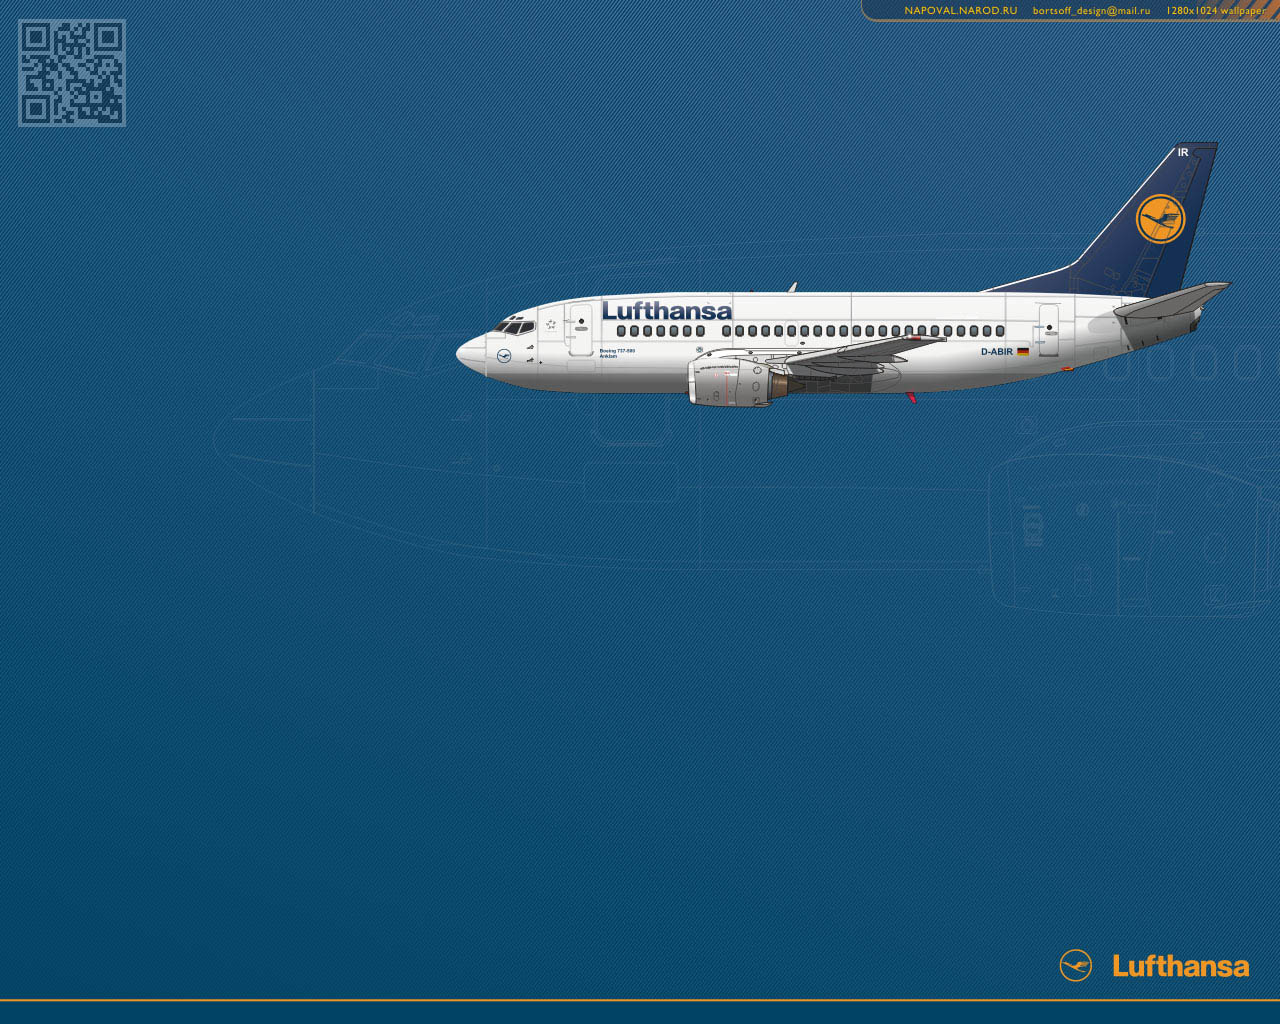 Обои для рабочего стола. Lufthansa Boeing 737 wallpaper 1280x1024